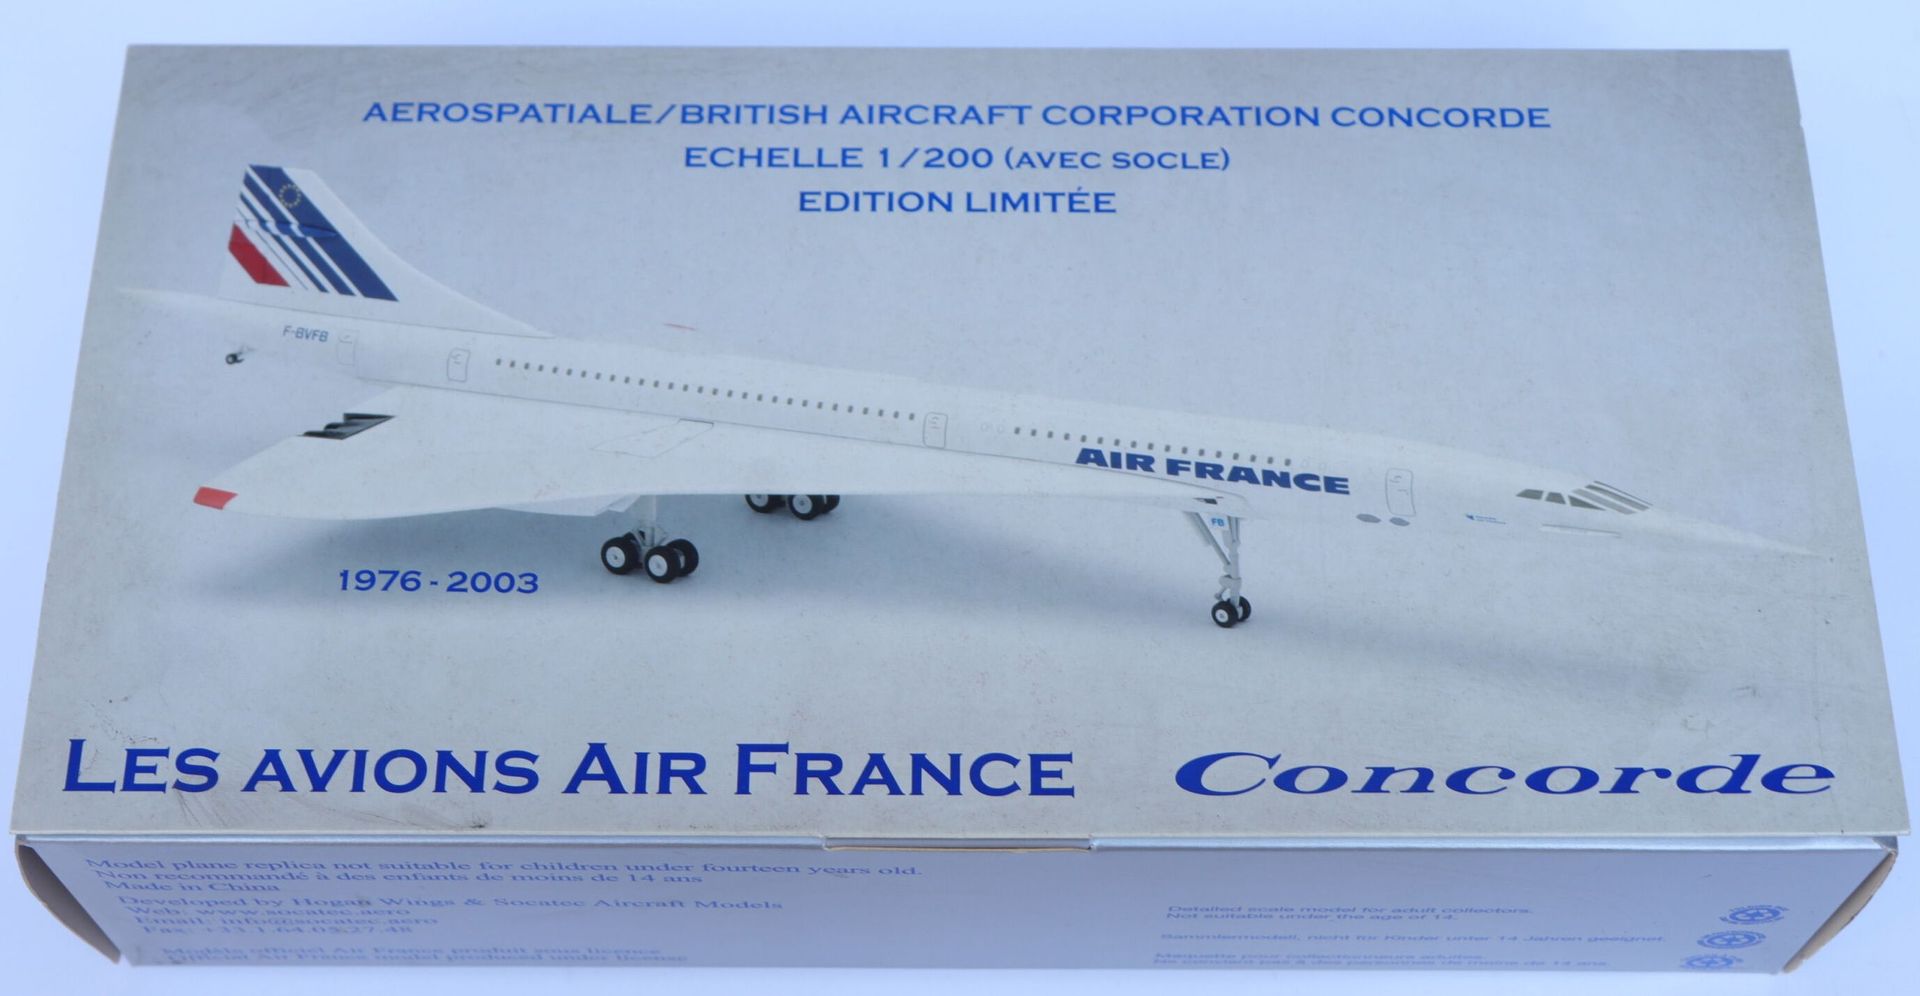 Null 法国康科德航空公司。

大型压铸Socatec协和飞机模型，注册号为F-BVSD。

比例为1/200。

法航博物馆限量版。

全新的原包装盒。

&hellip;